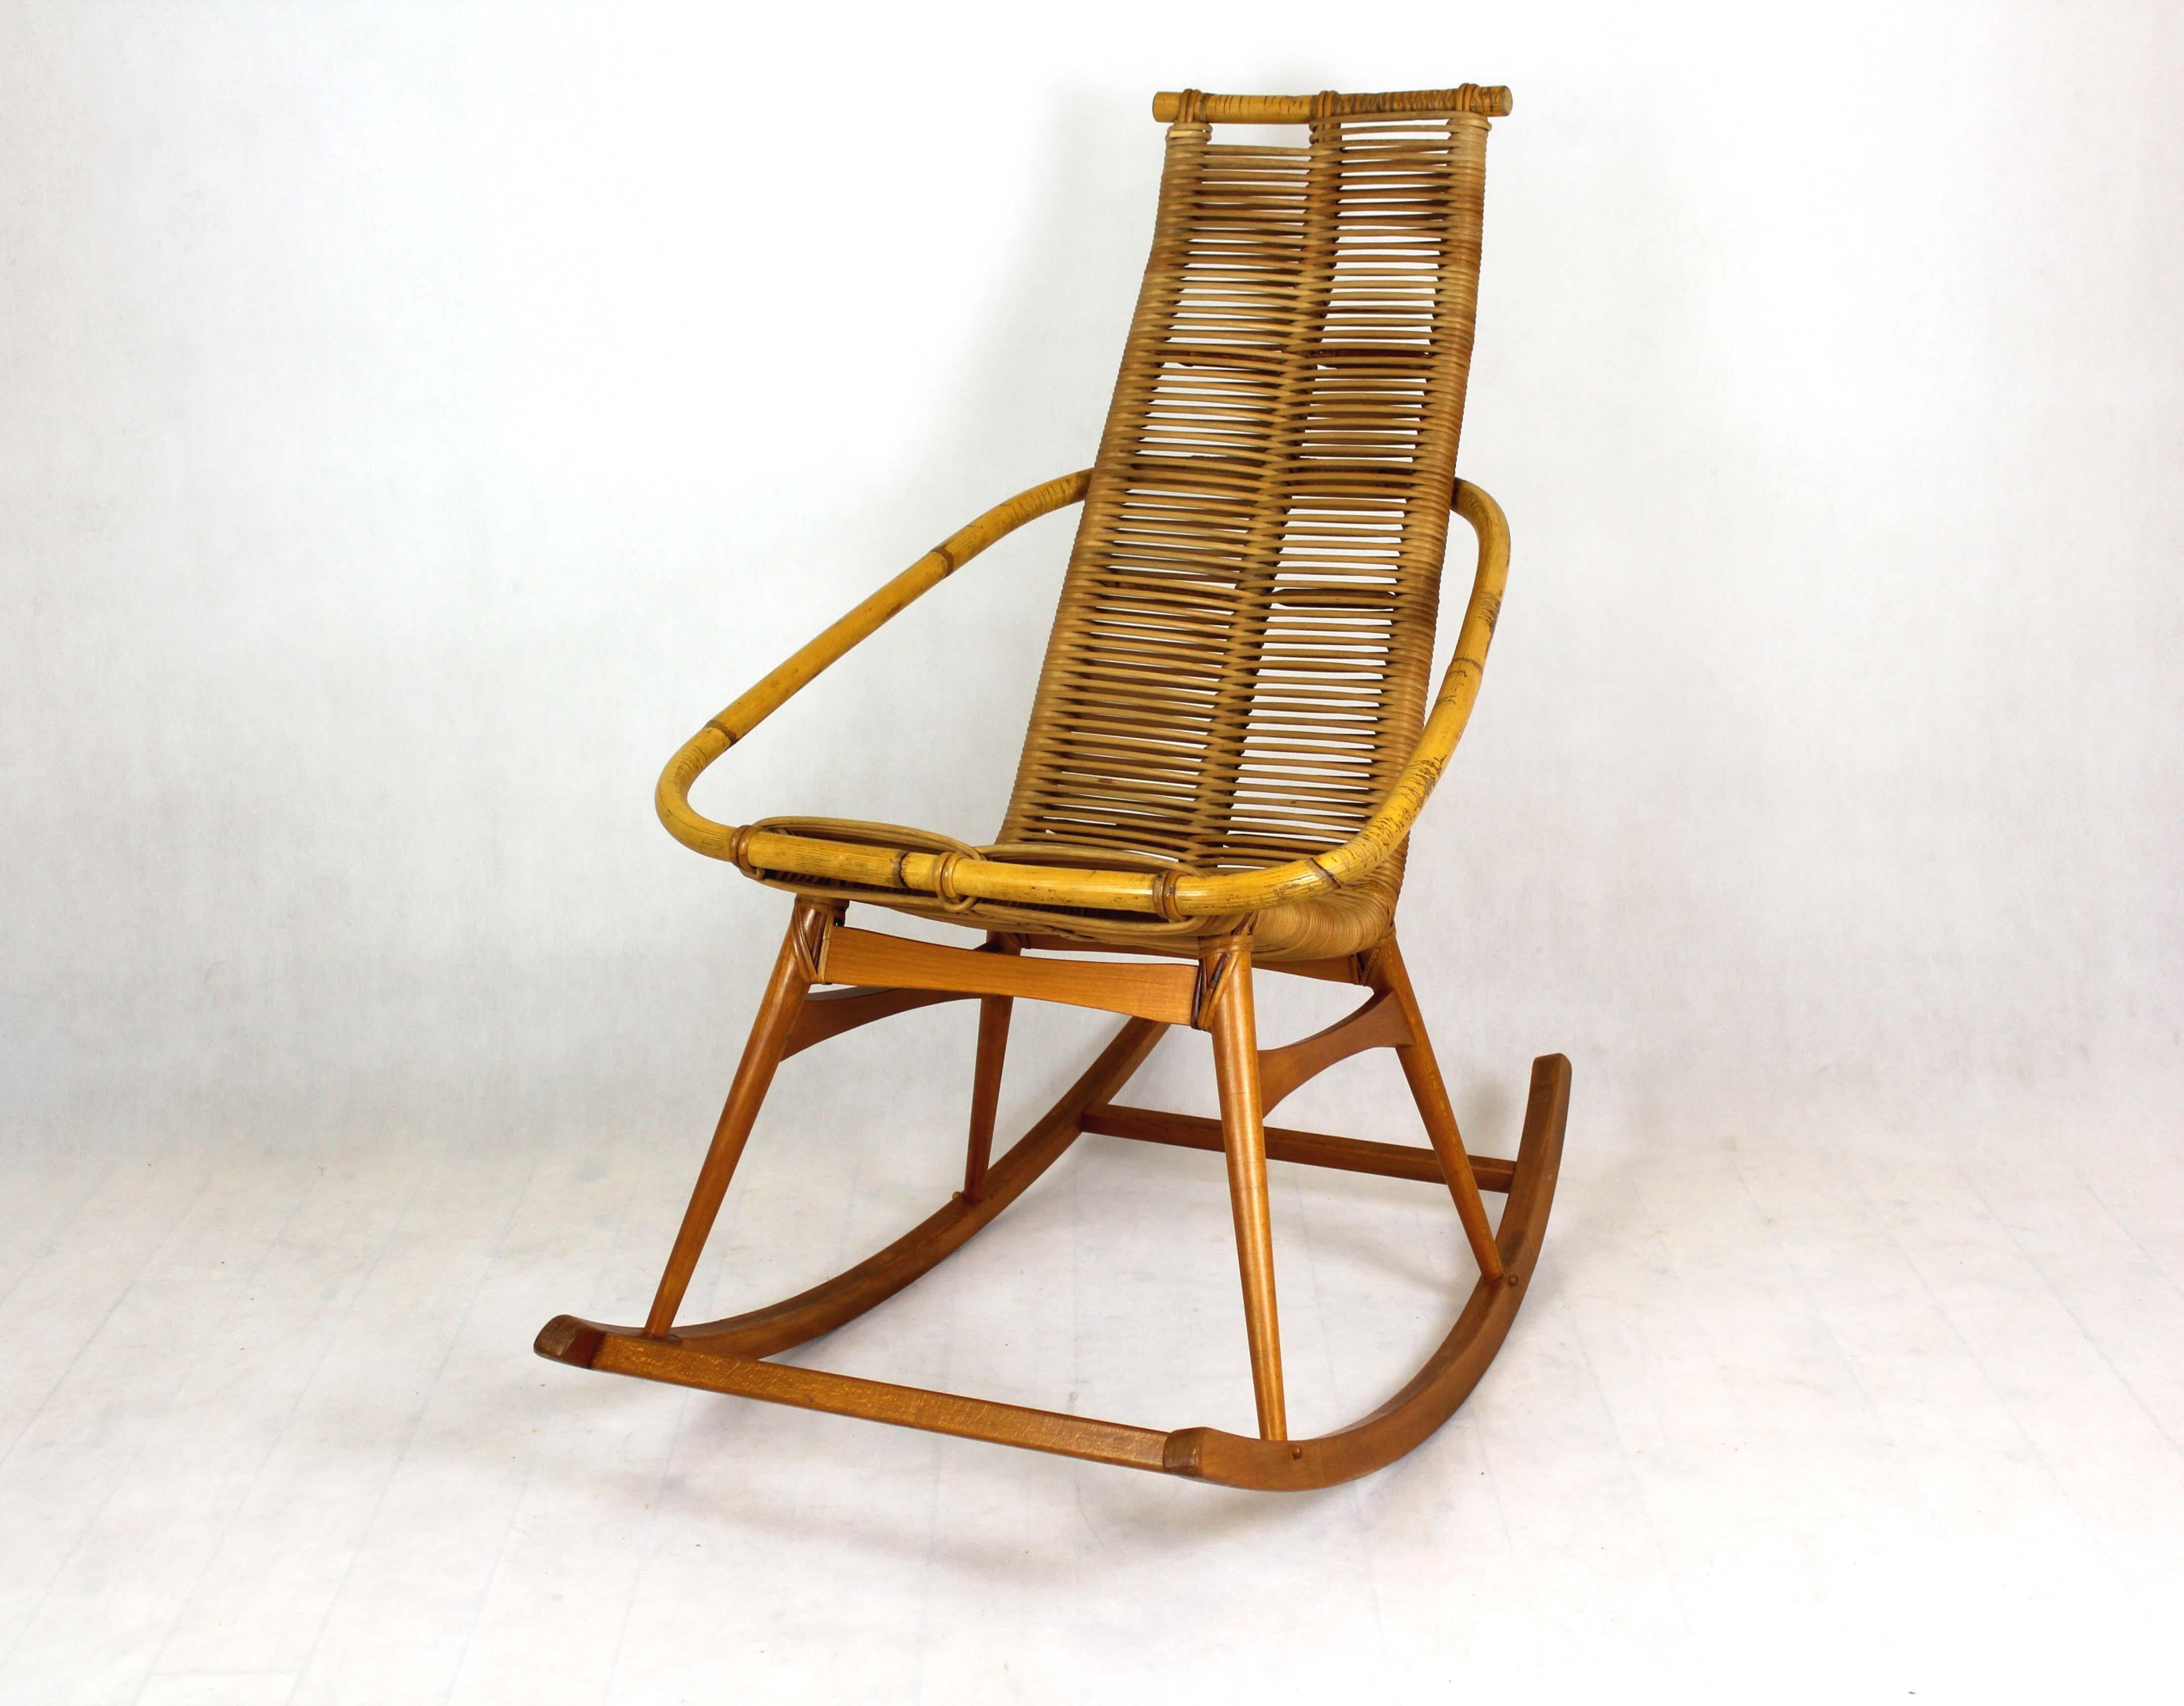 Cette chaise à bascule en rotin a été fabriquée dans l'ancienne Tchécoslovaquie dans les années 1960.
 